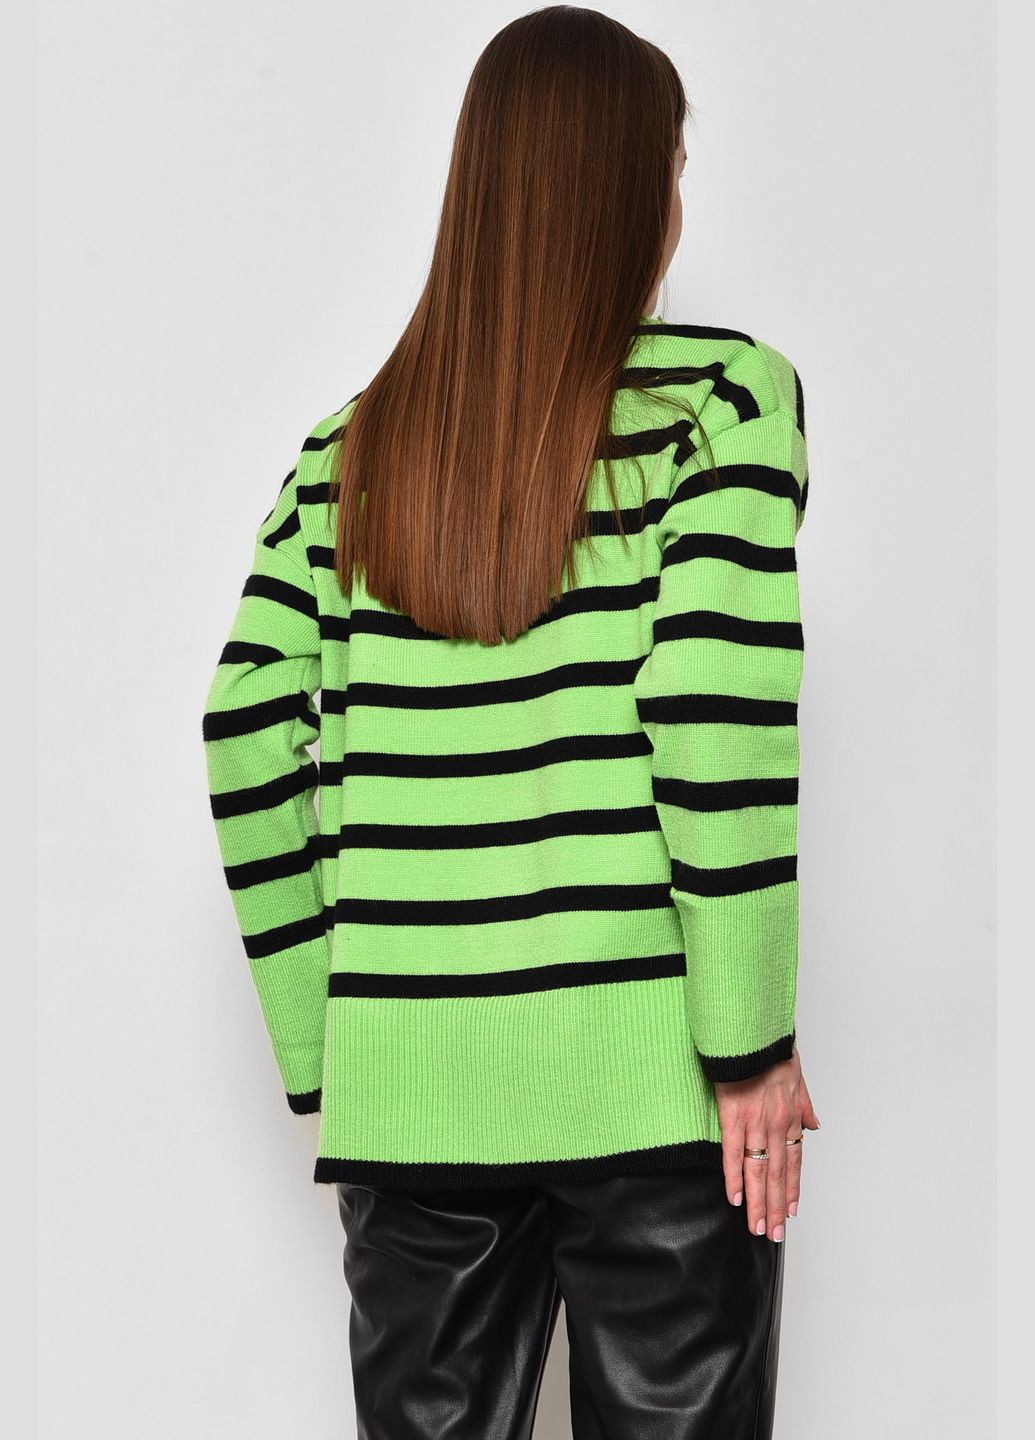 Салатовый зимний свитер женский полубатальный в полоску салатового цвета пуловер Let's Shop